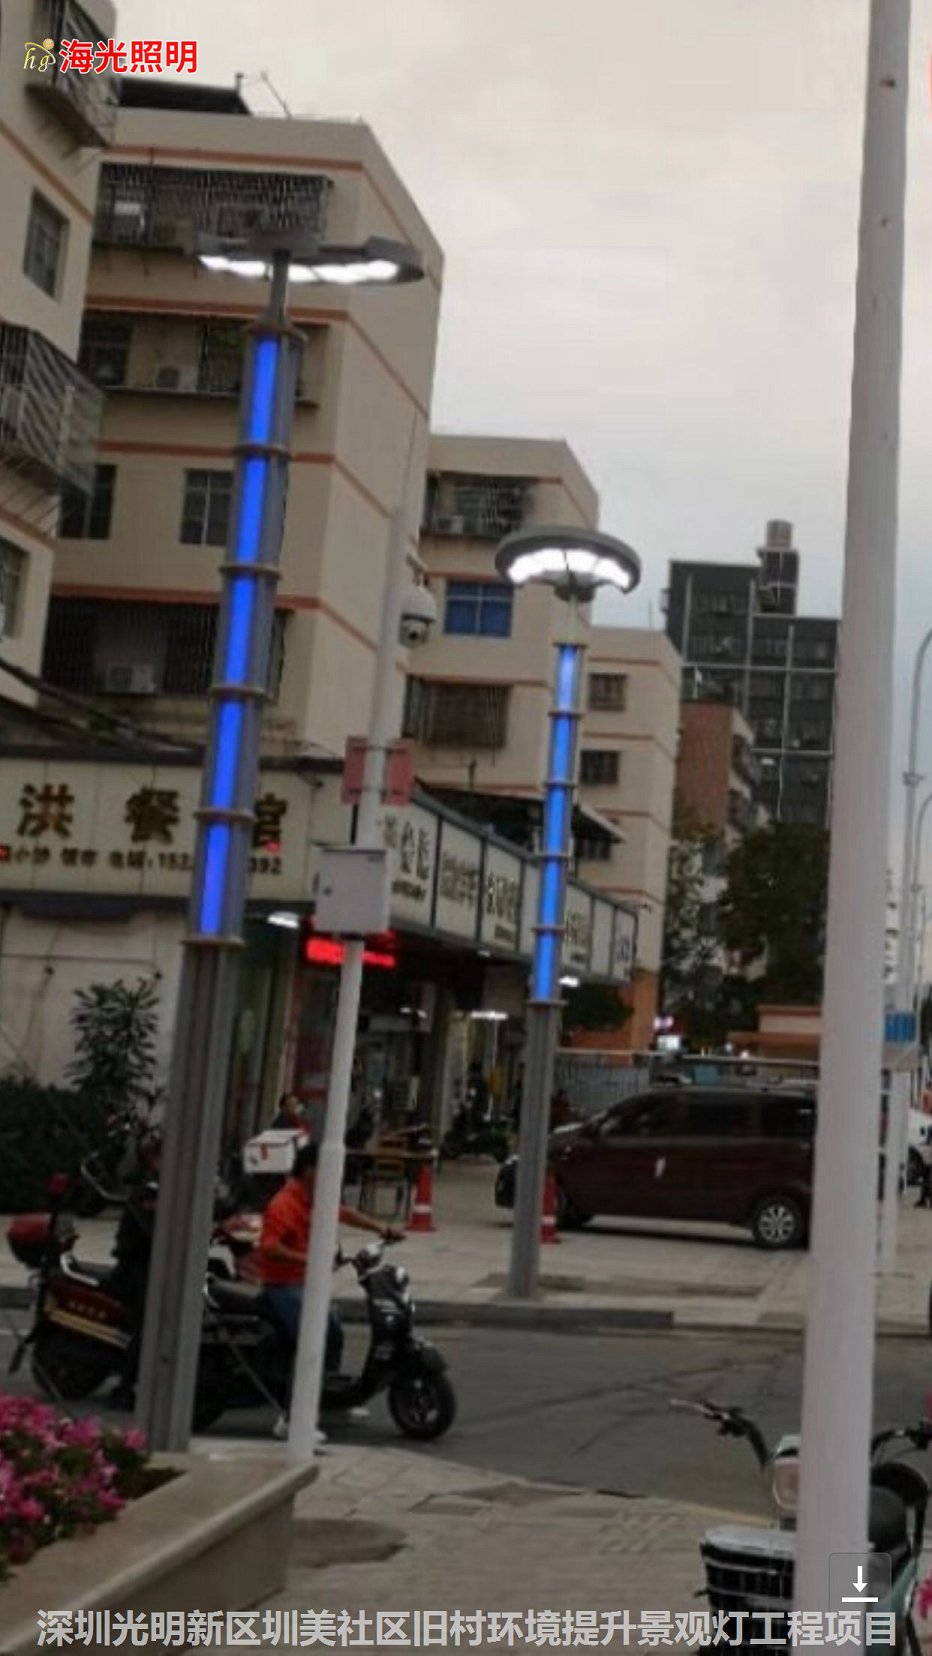 深圳市光明新區圳美社區舊村環境提升景觀燈工程項目